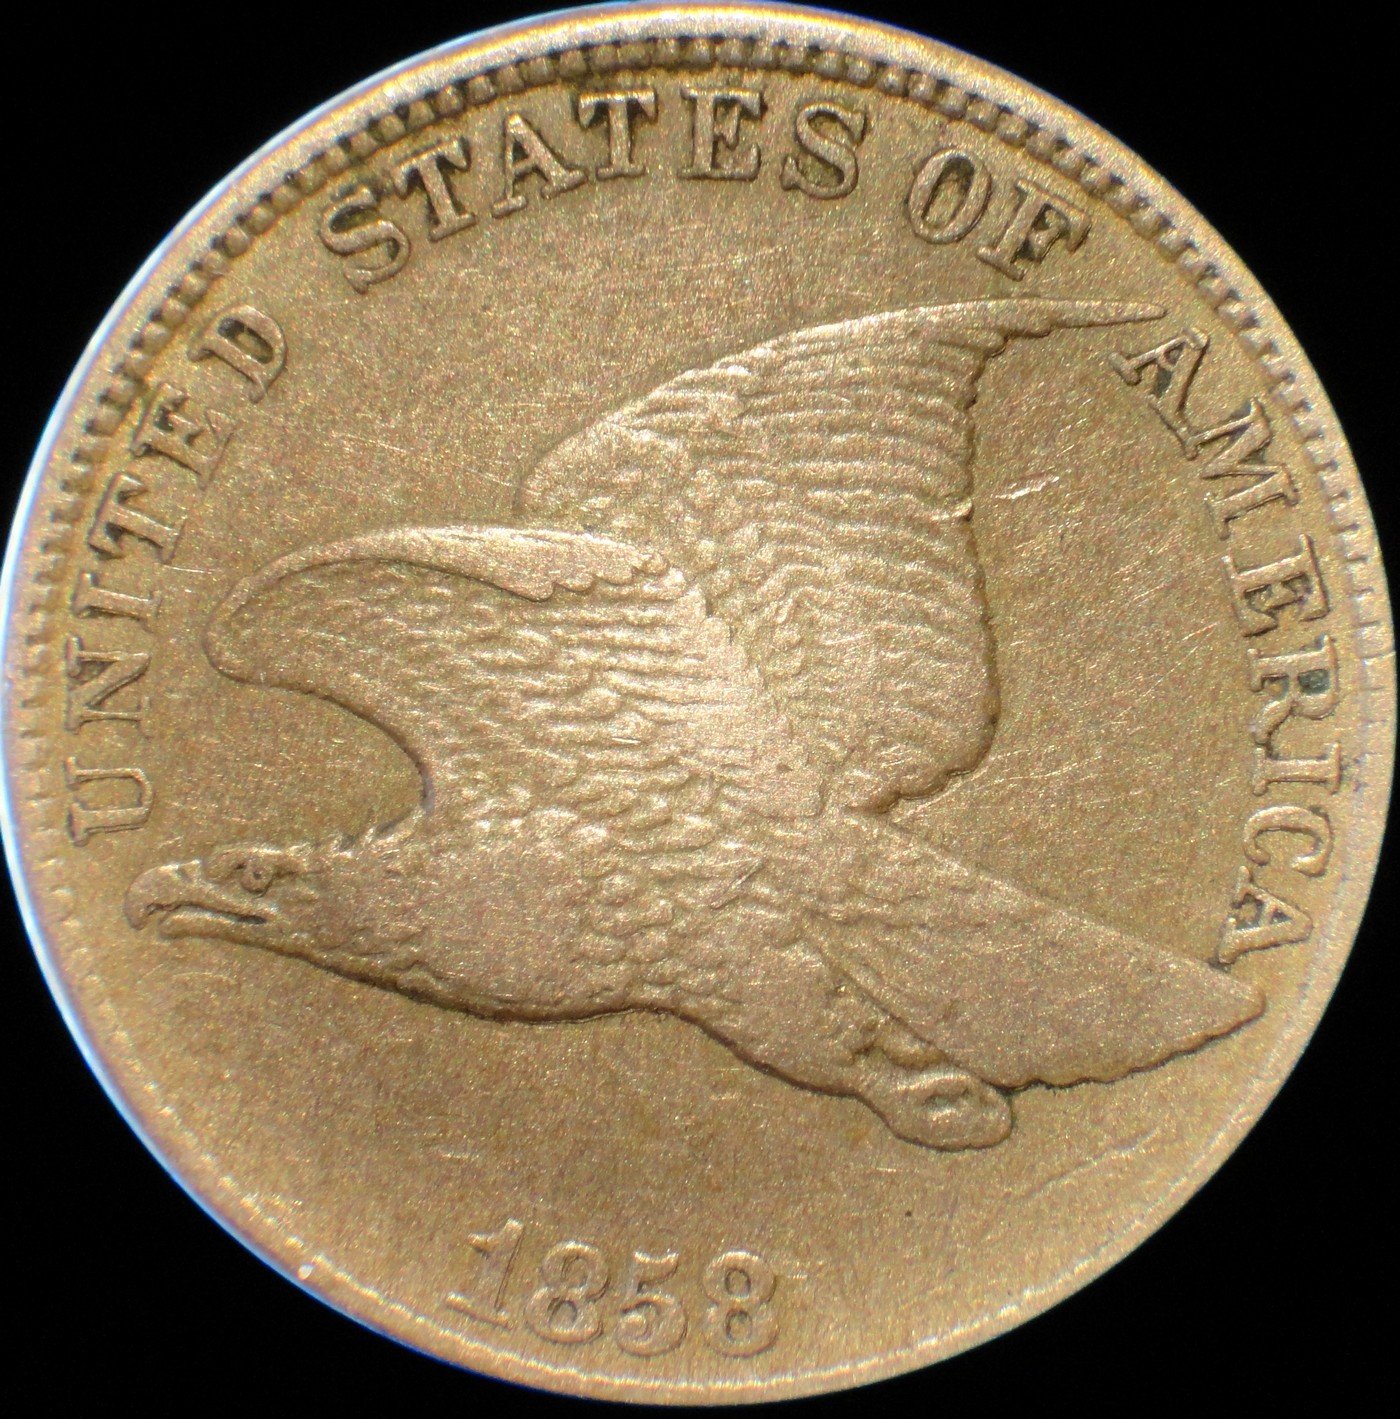 1858 DDO-007 Flying Eagle Penny